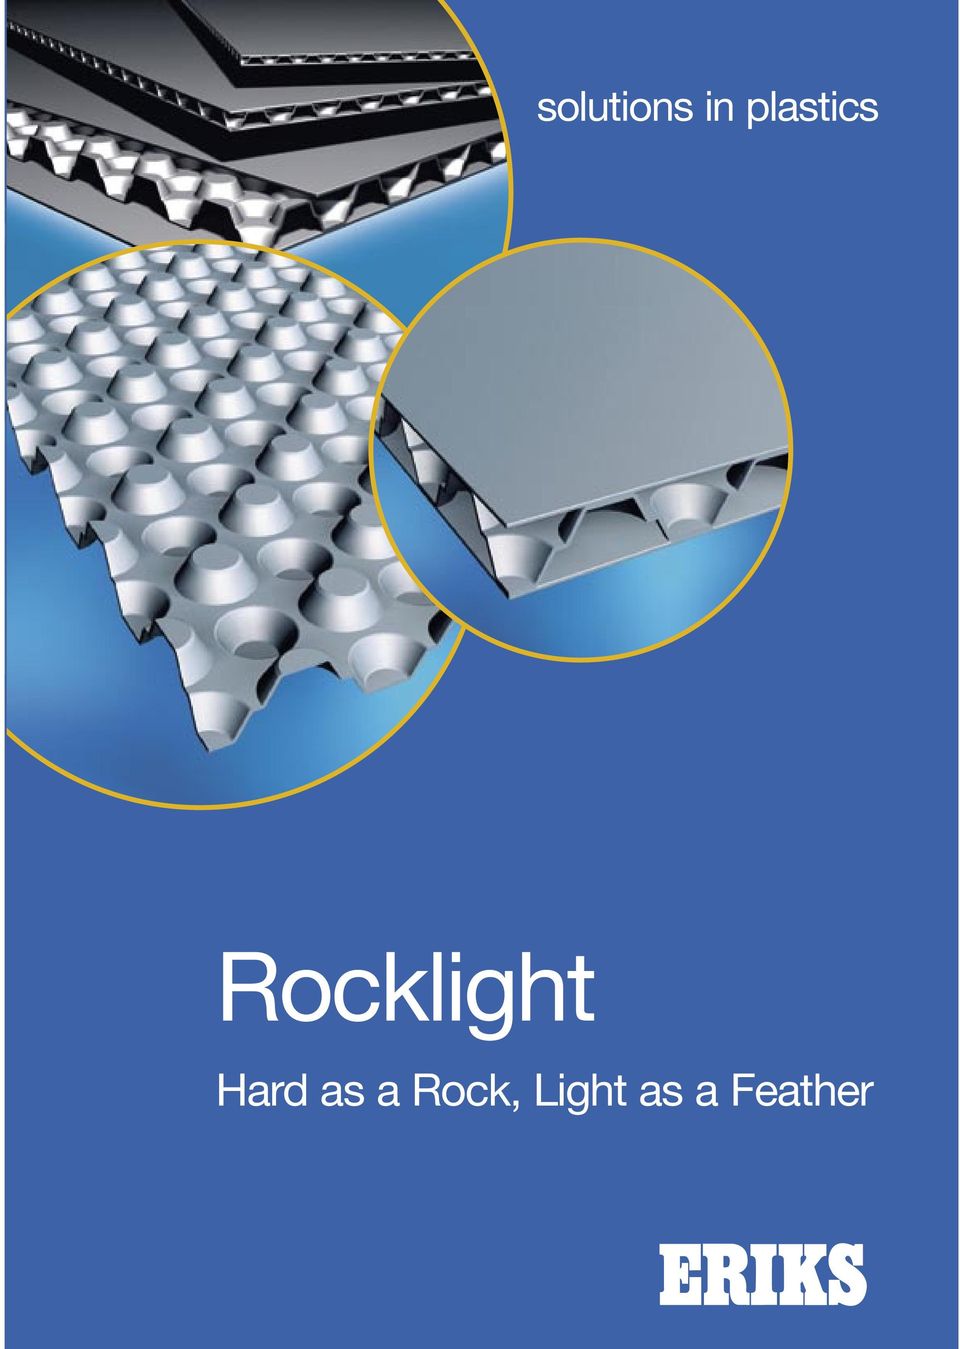 Rocklight Hard